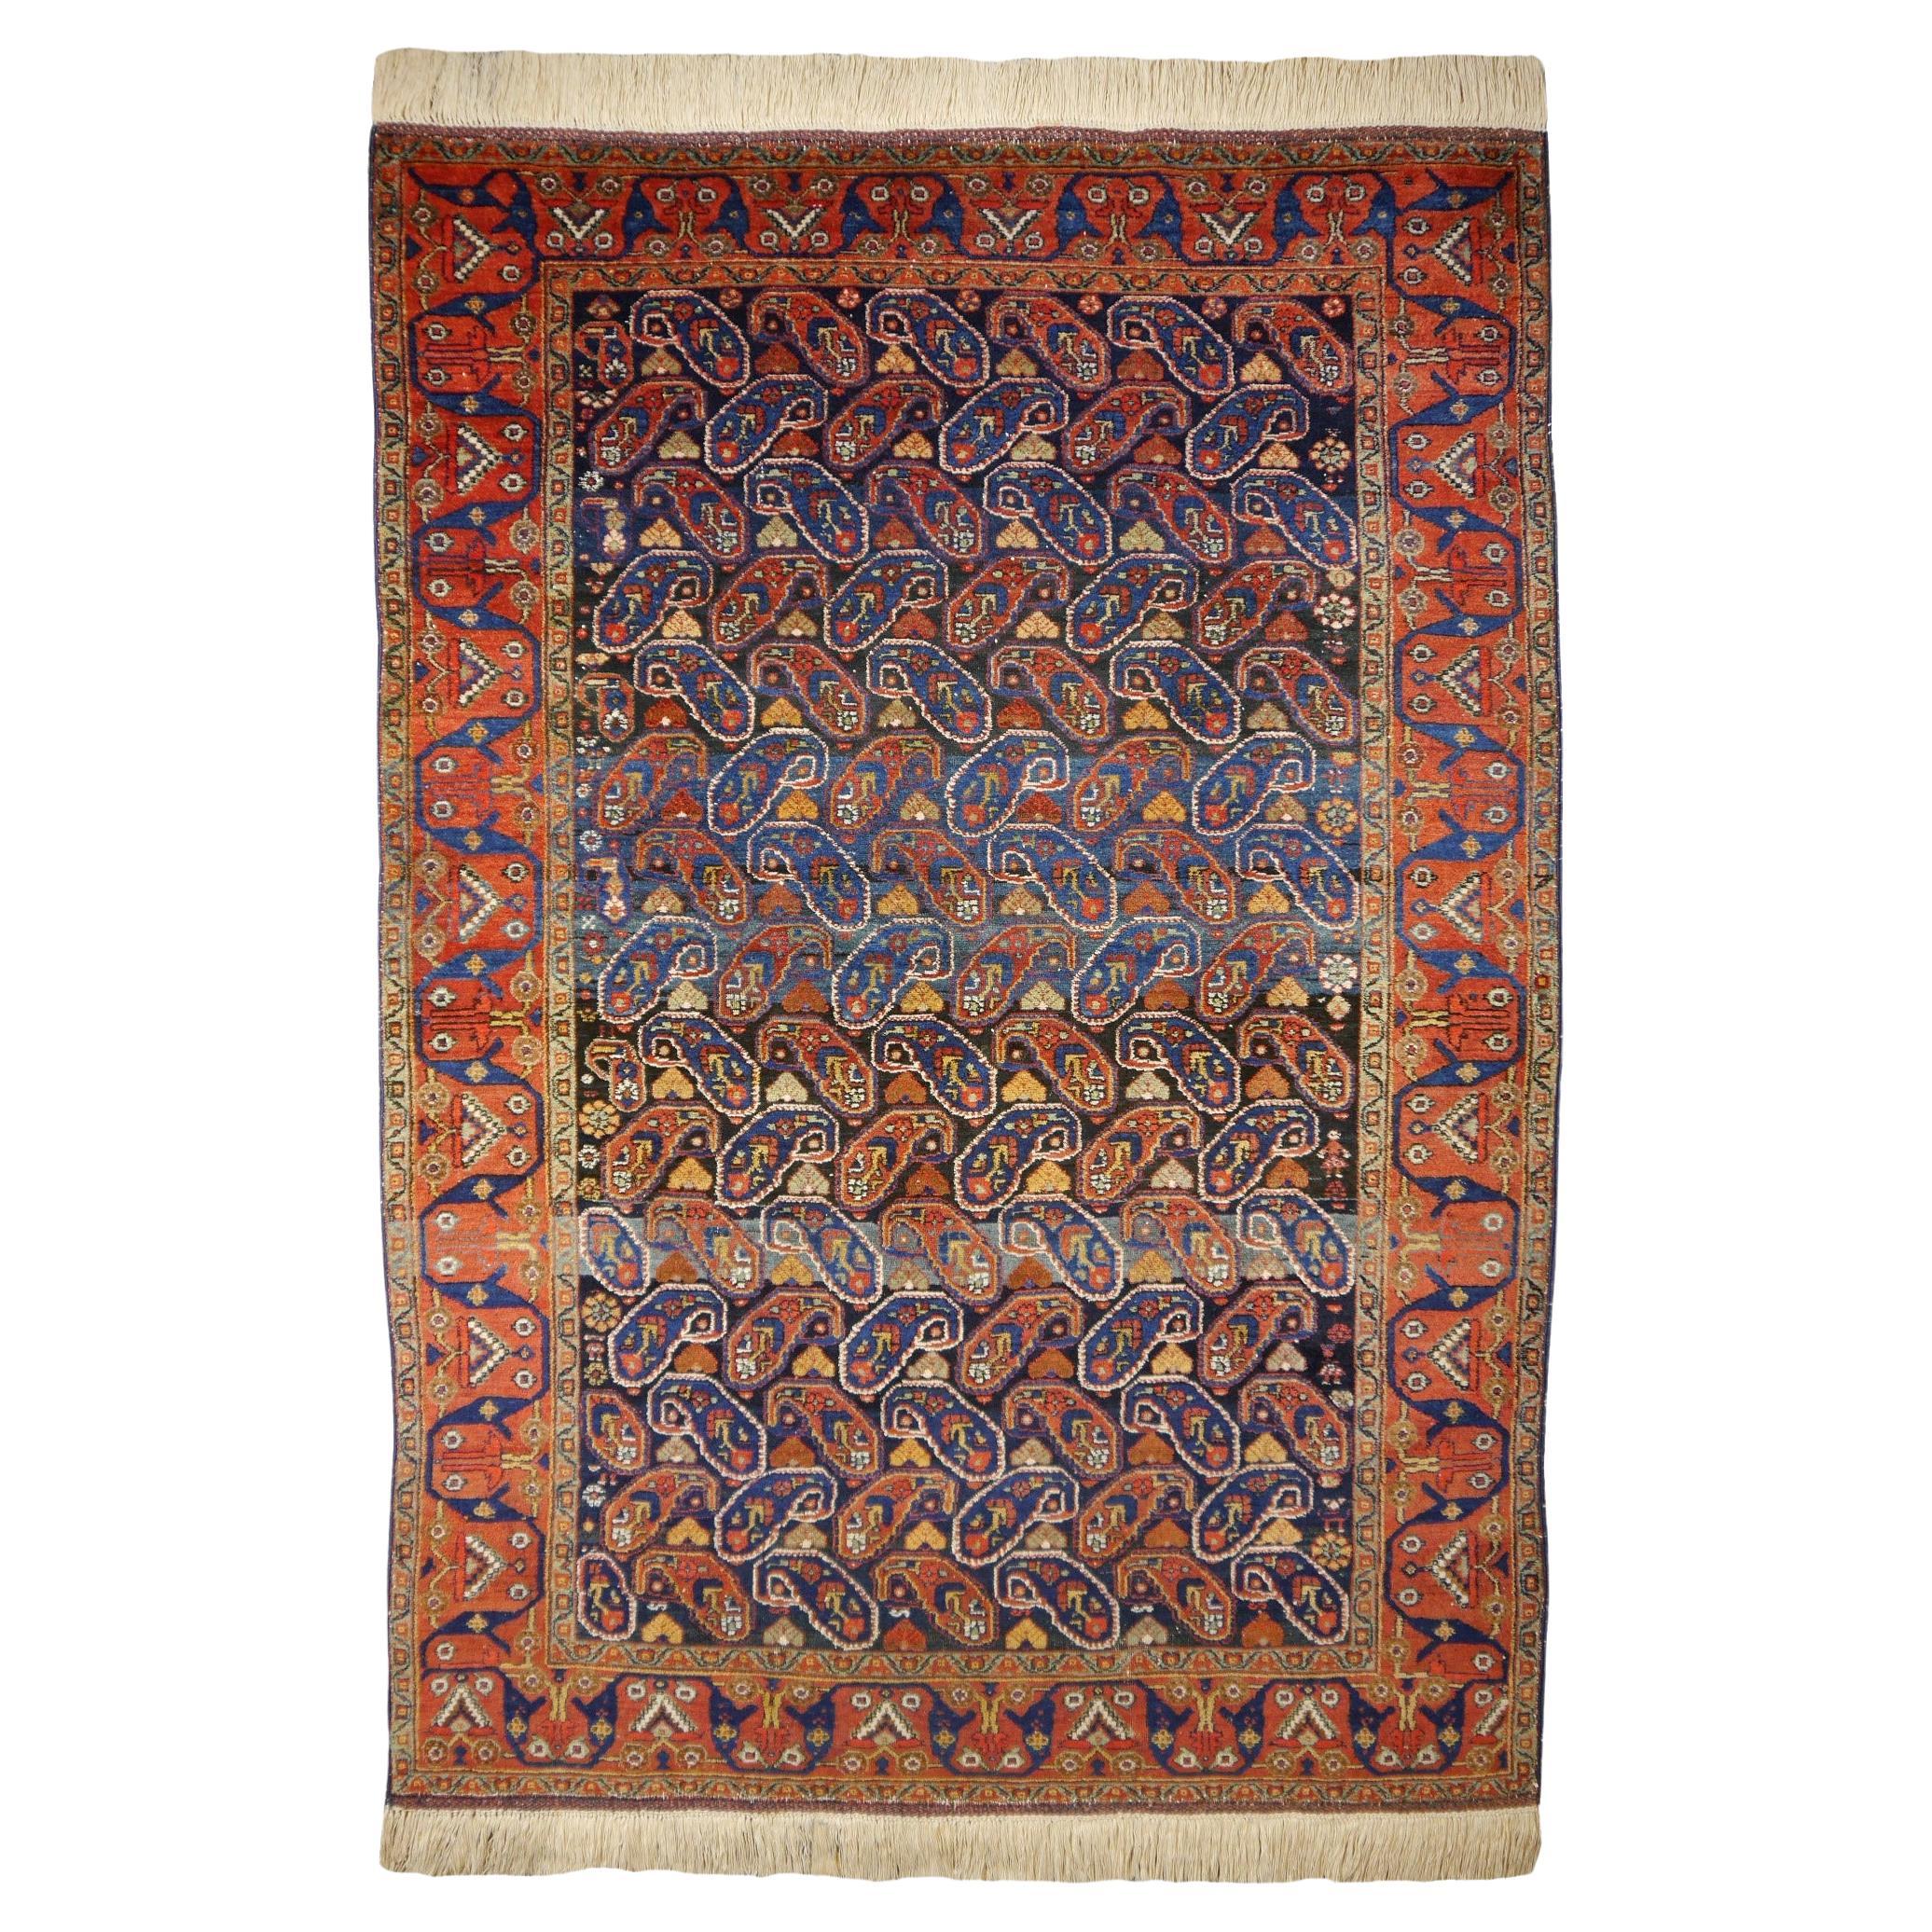 Afshari antique rug  6.8 x 4.8 ft natural color Bothe design blue rust For Sale